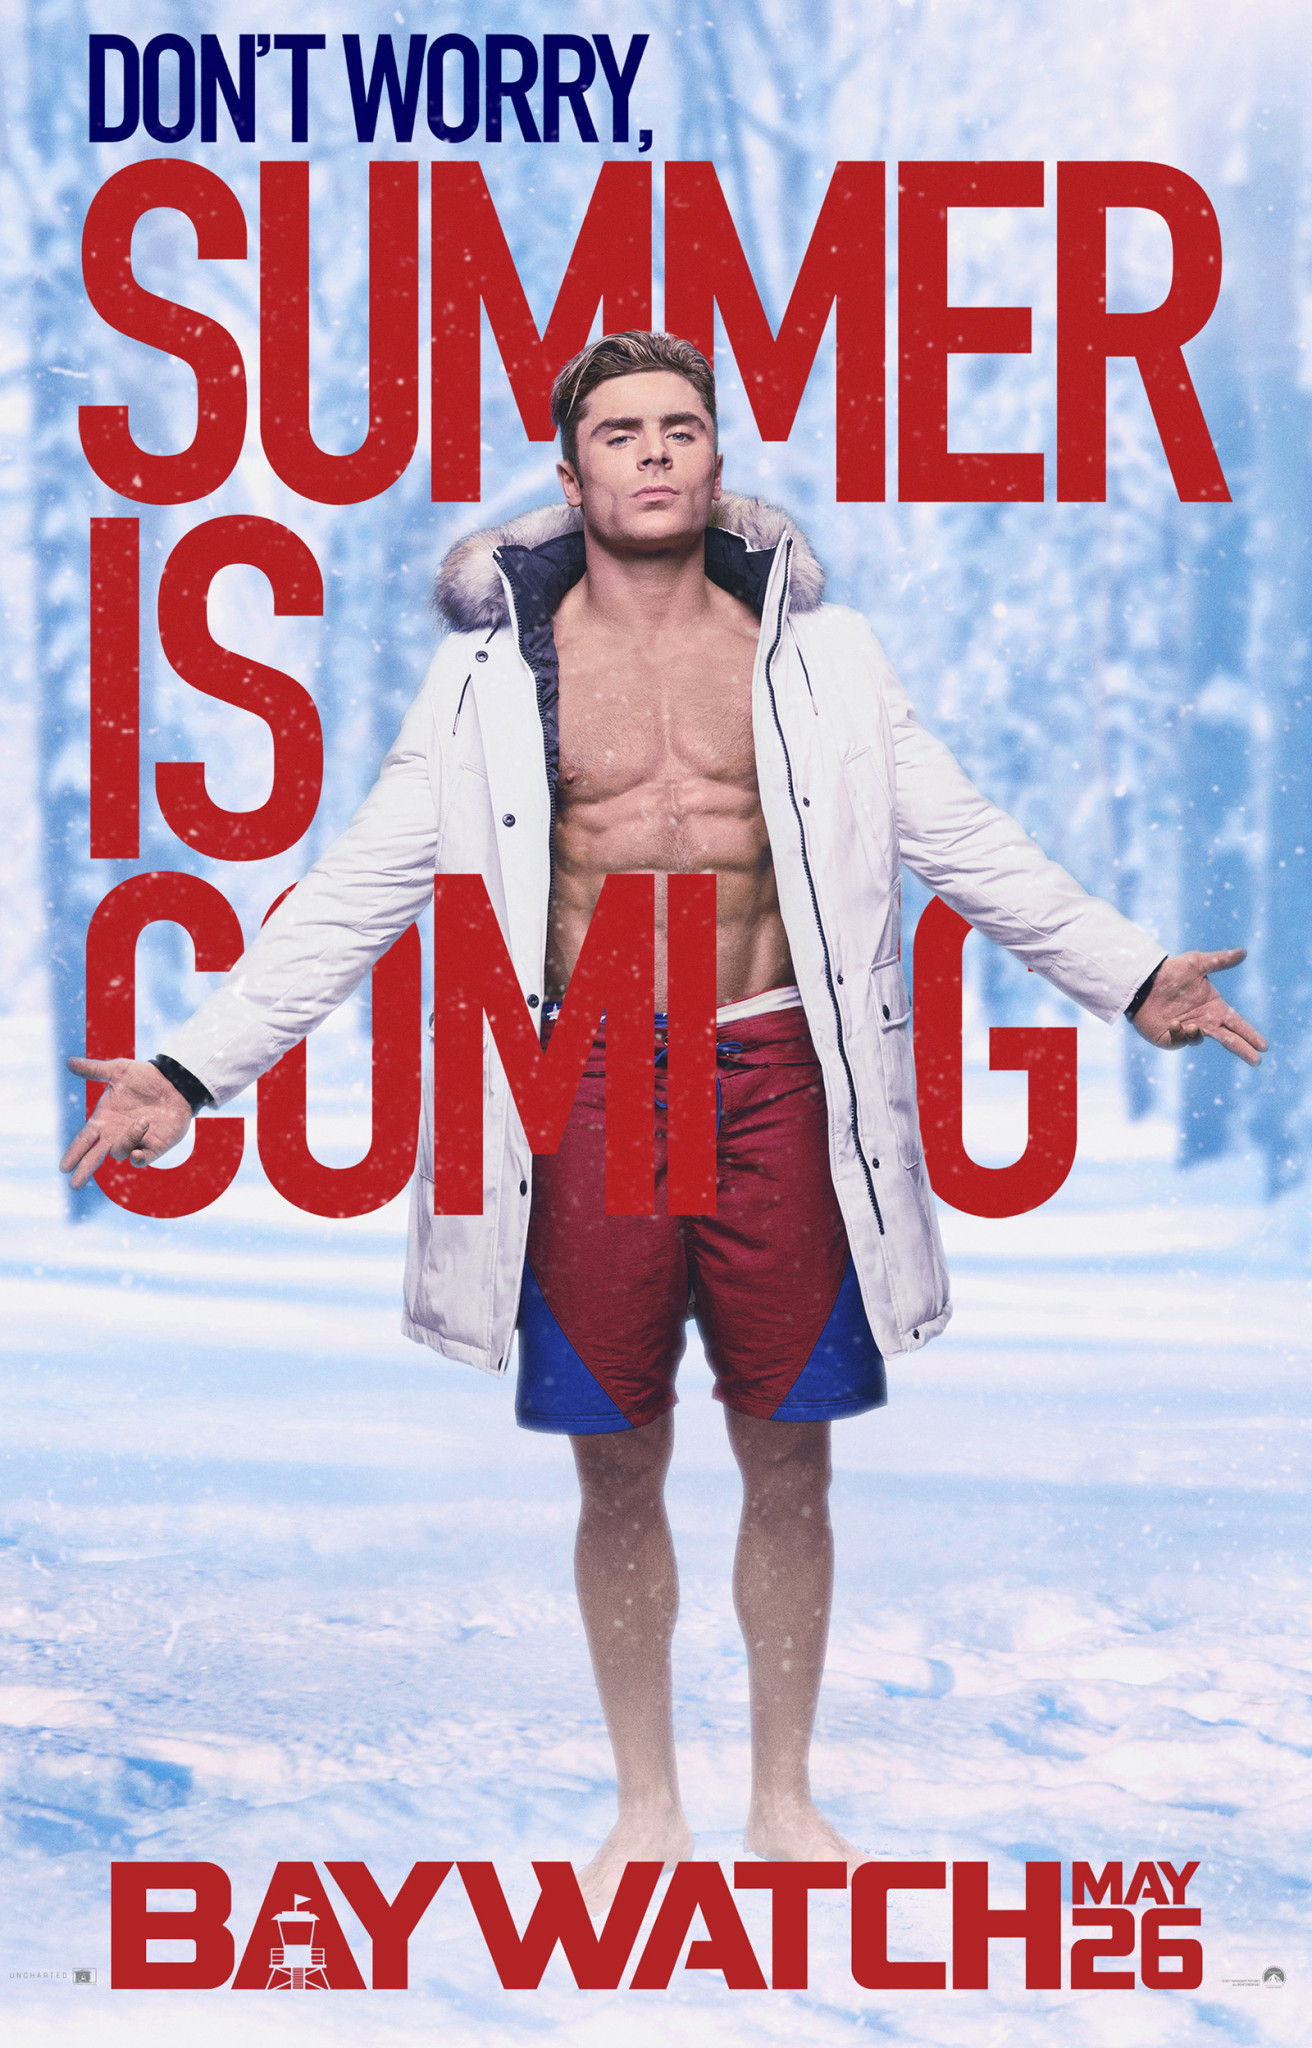 $!“El verano llega” con nuevos posters de Baywatch